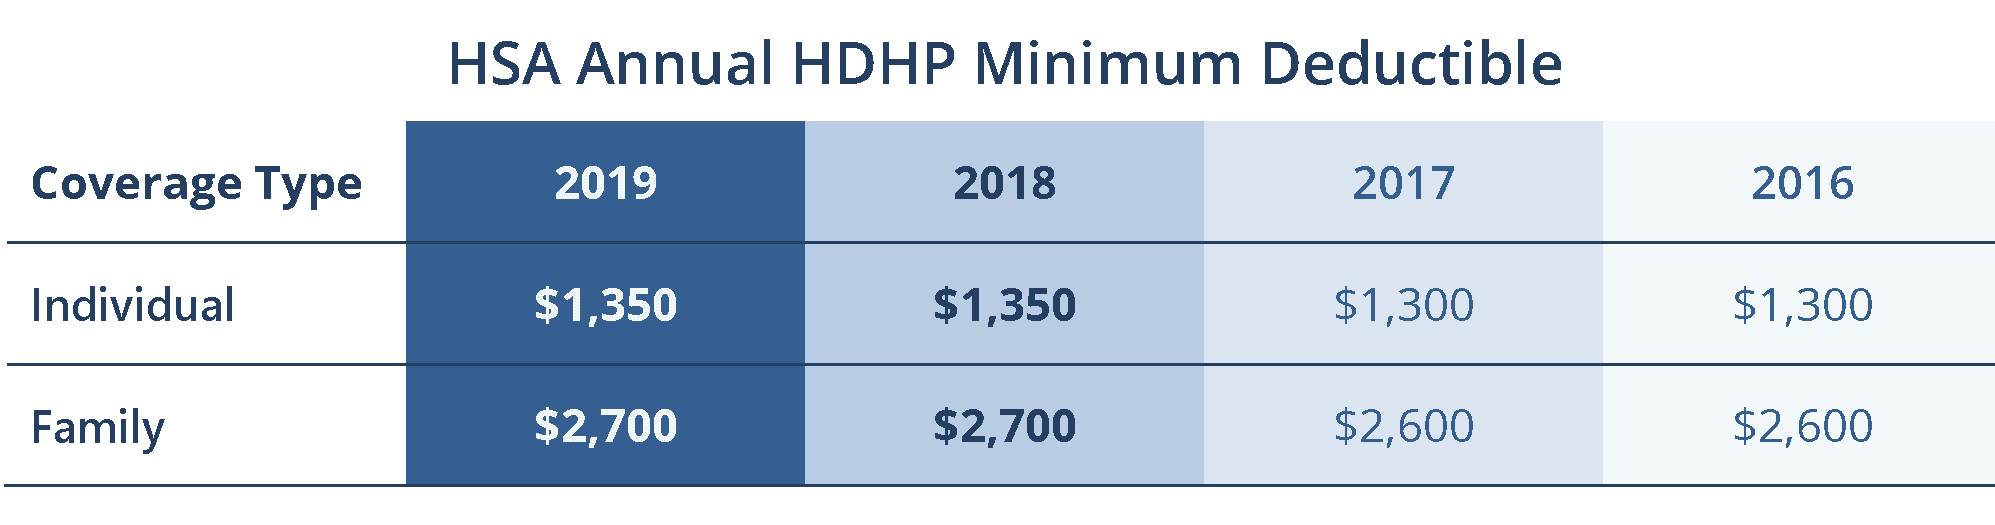 HSA Annual HDHP Minimum Deductible